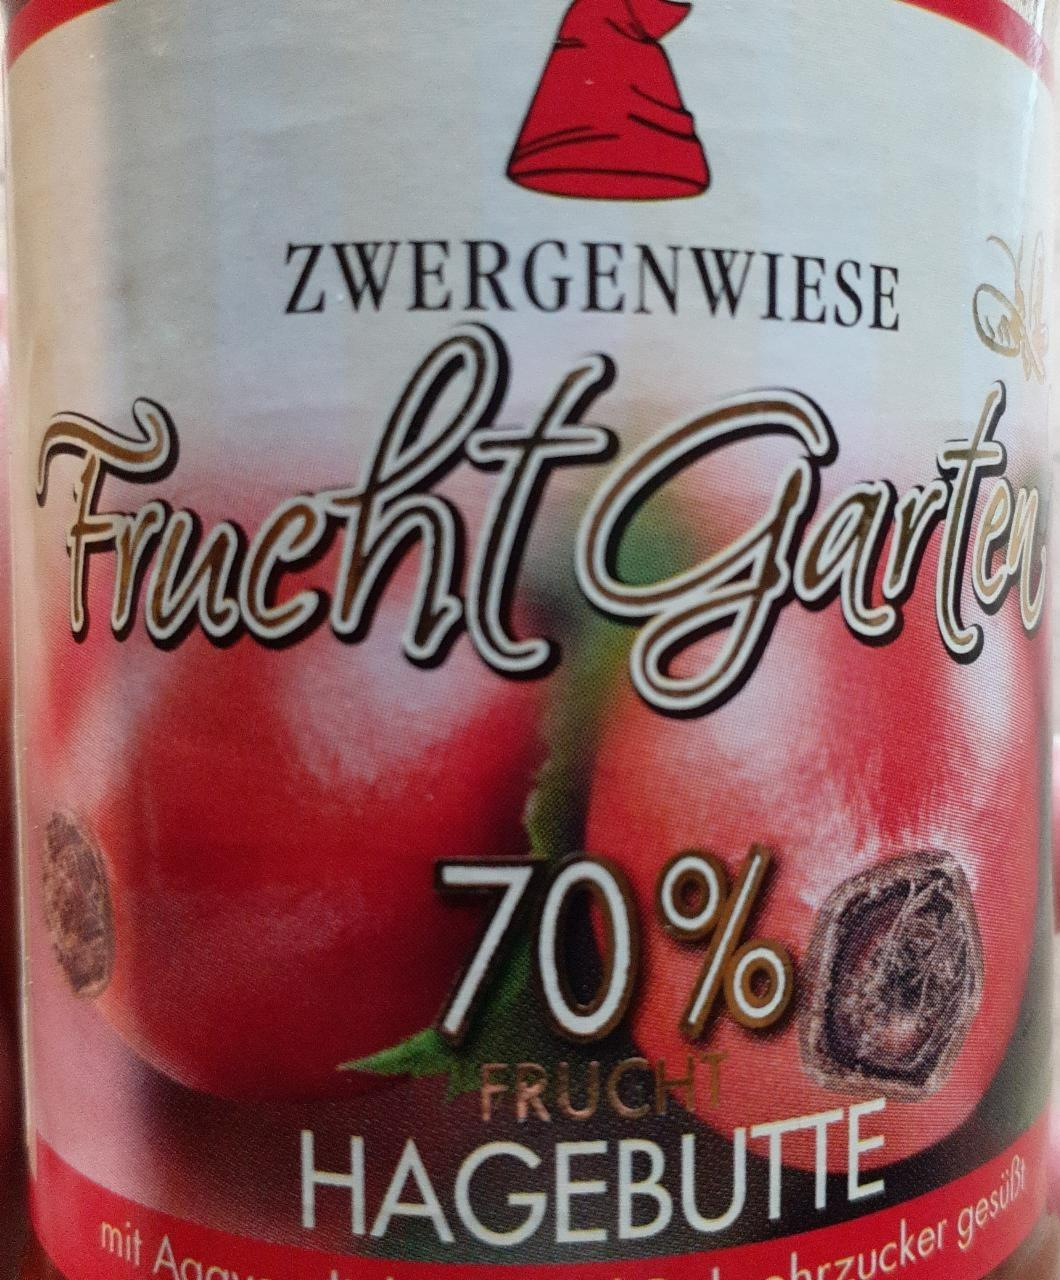 Fotografie - Frucht Garten 70% Hagebutte Zwergenwiese